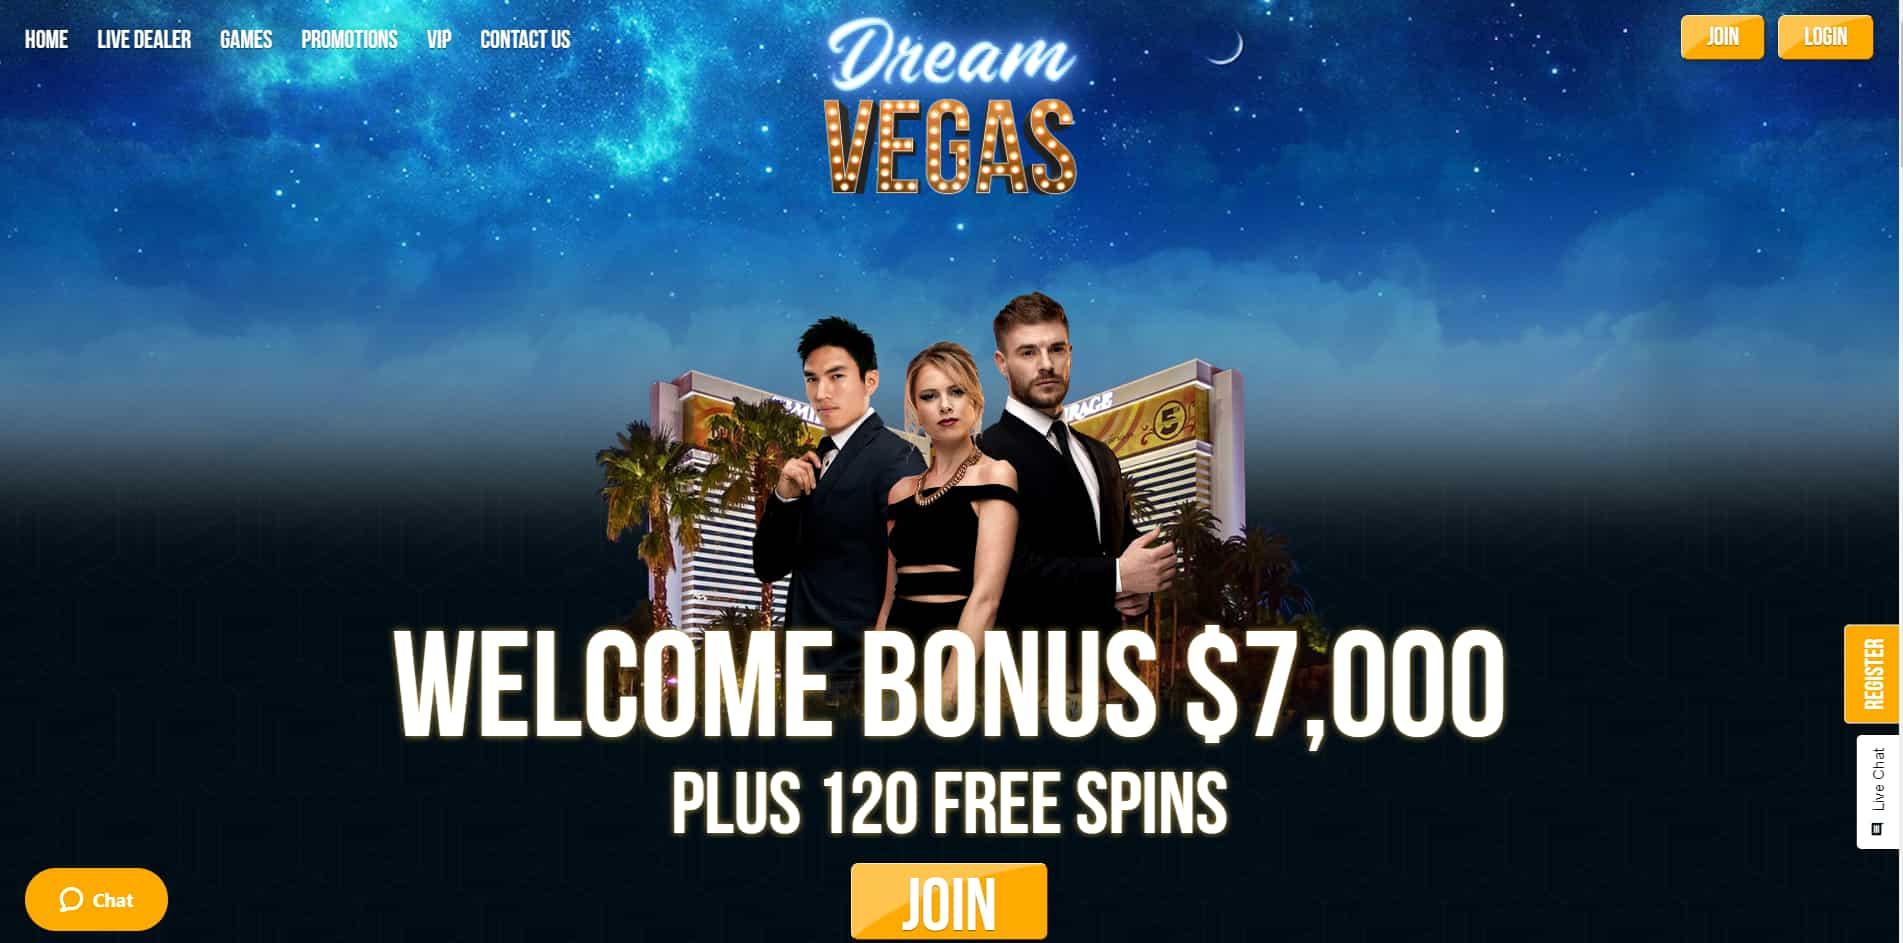 Dream Vegas casino homepage